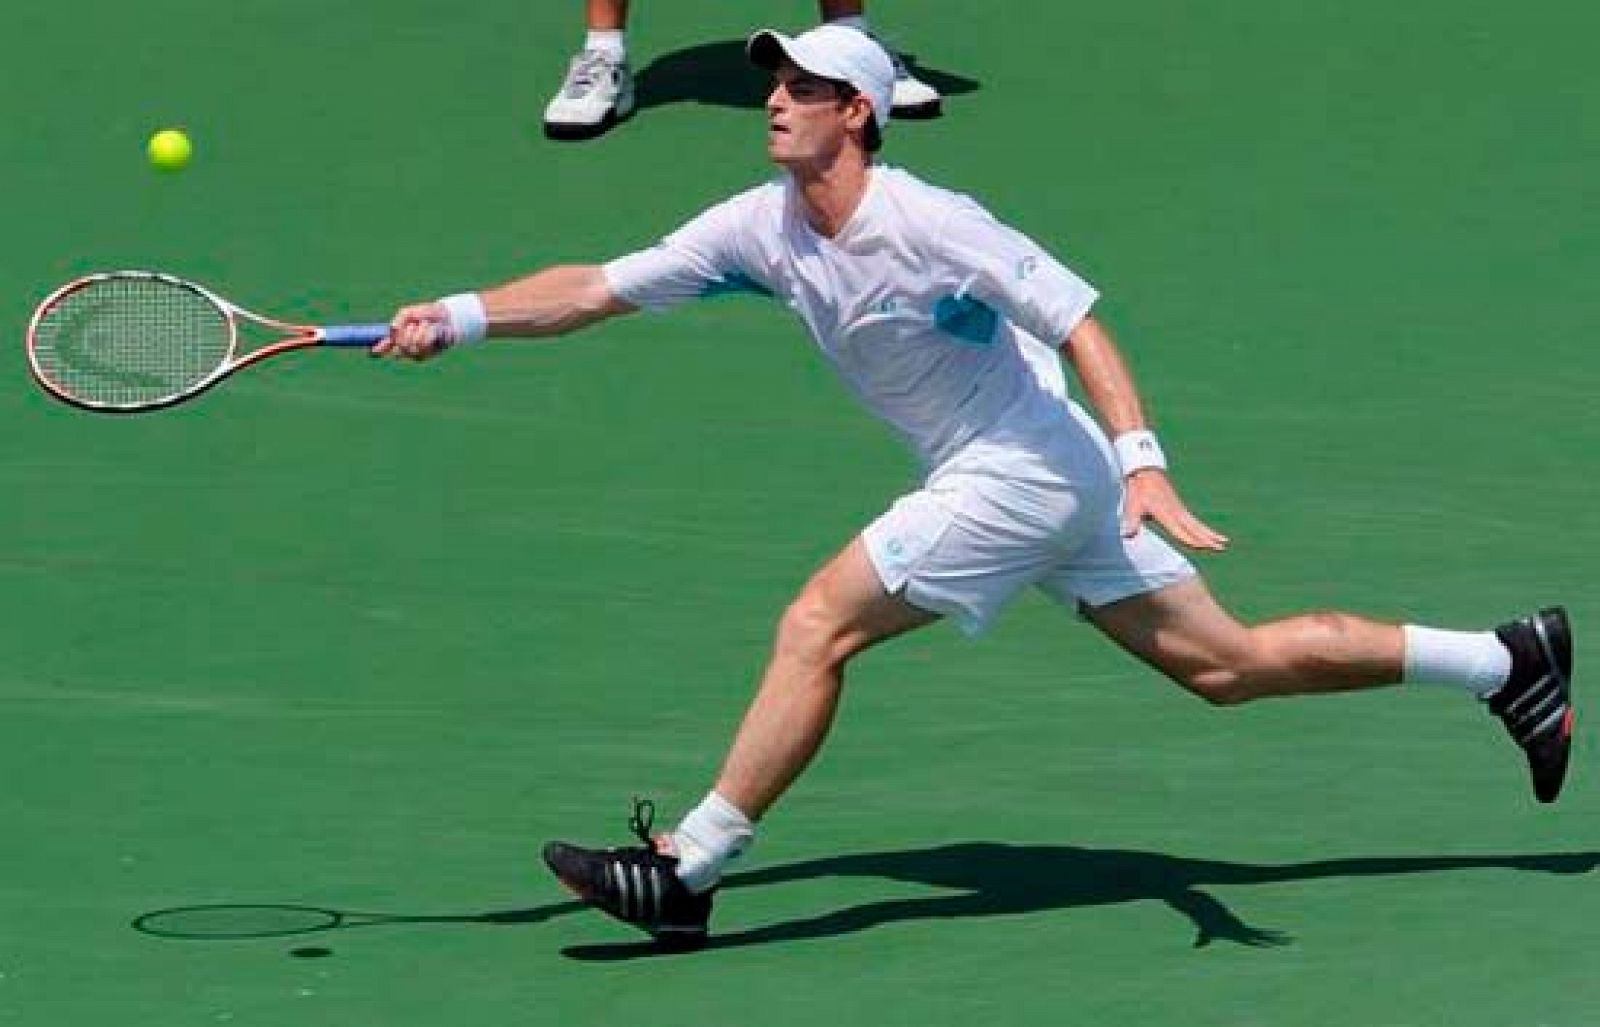 El escocés Andy Murray se adjudicó el Masters 1000 de Miami ante el serbio Novak Djokovic por un claro 6-2, 7-5. El próximo torneo será el de Montecarlo, ya en tierra batida.